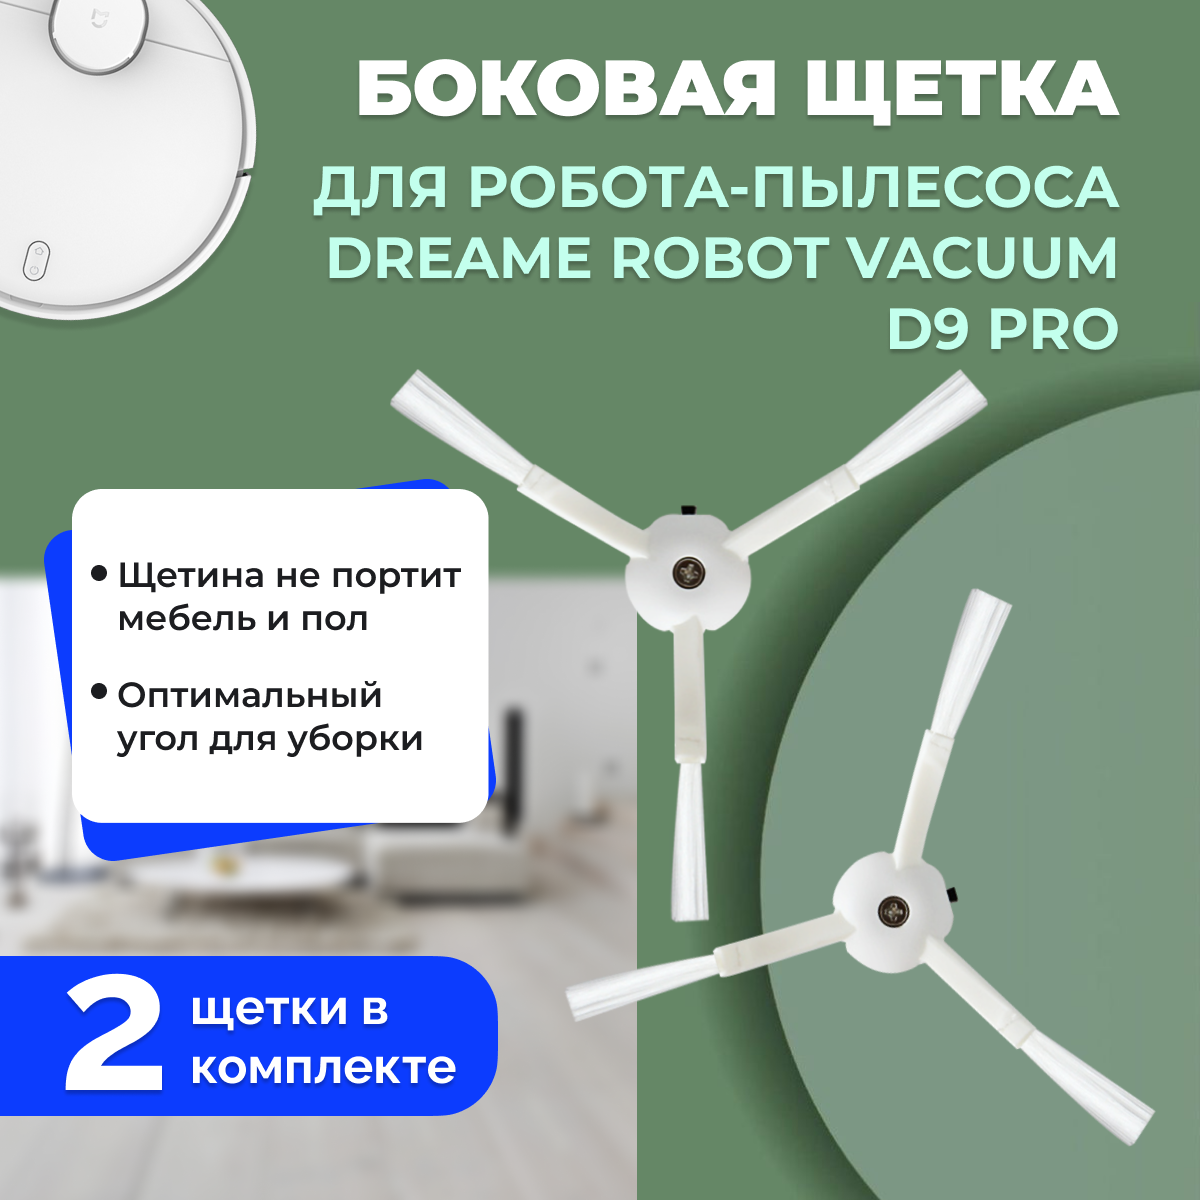 Боковая щетка для робота-пылесоса Dreame Robot Vacuum D9 Pro 558142, фото 1